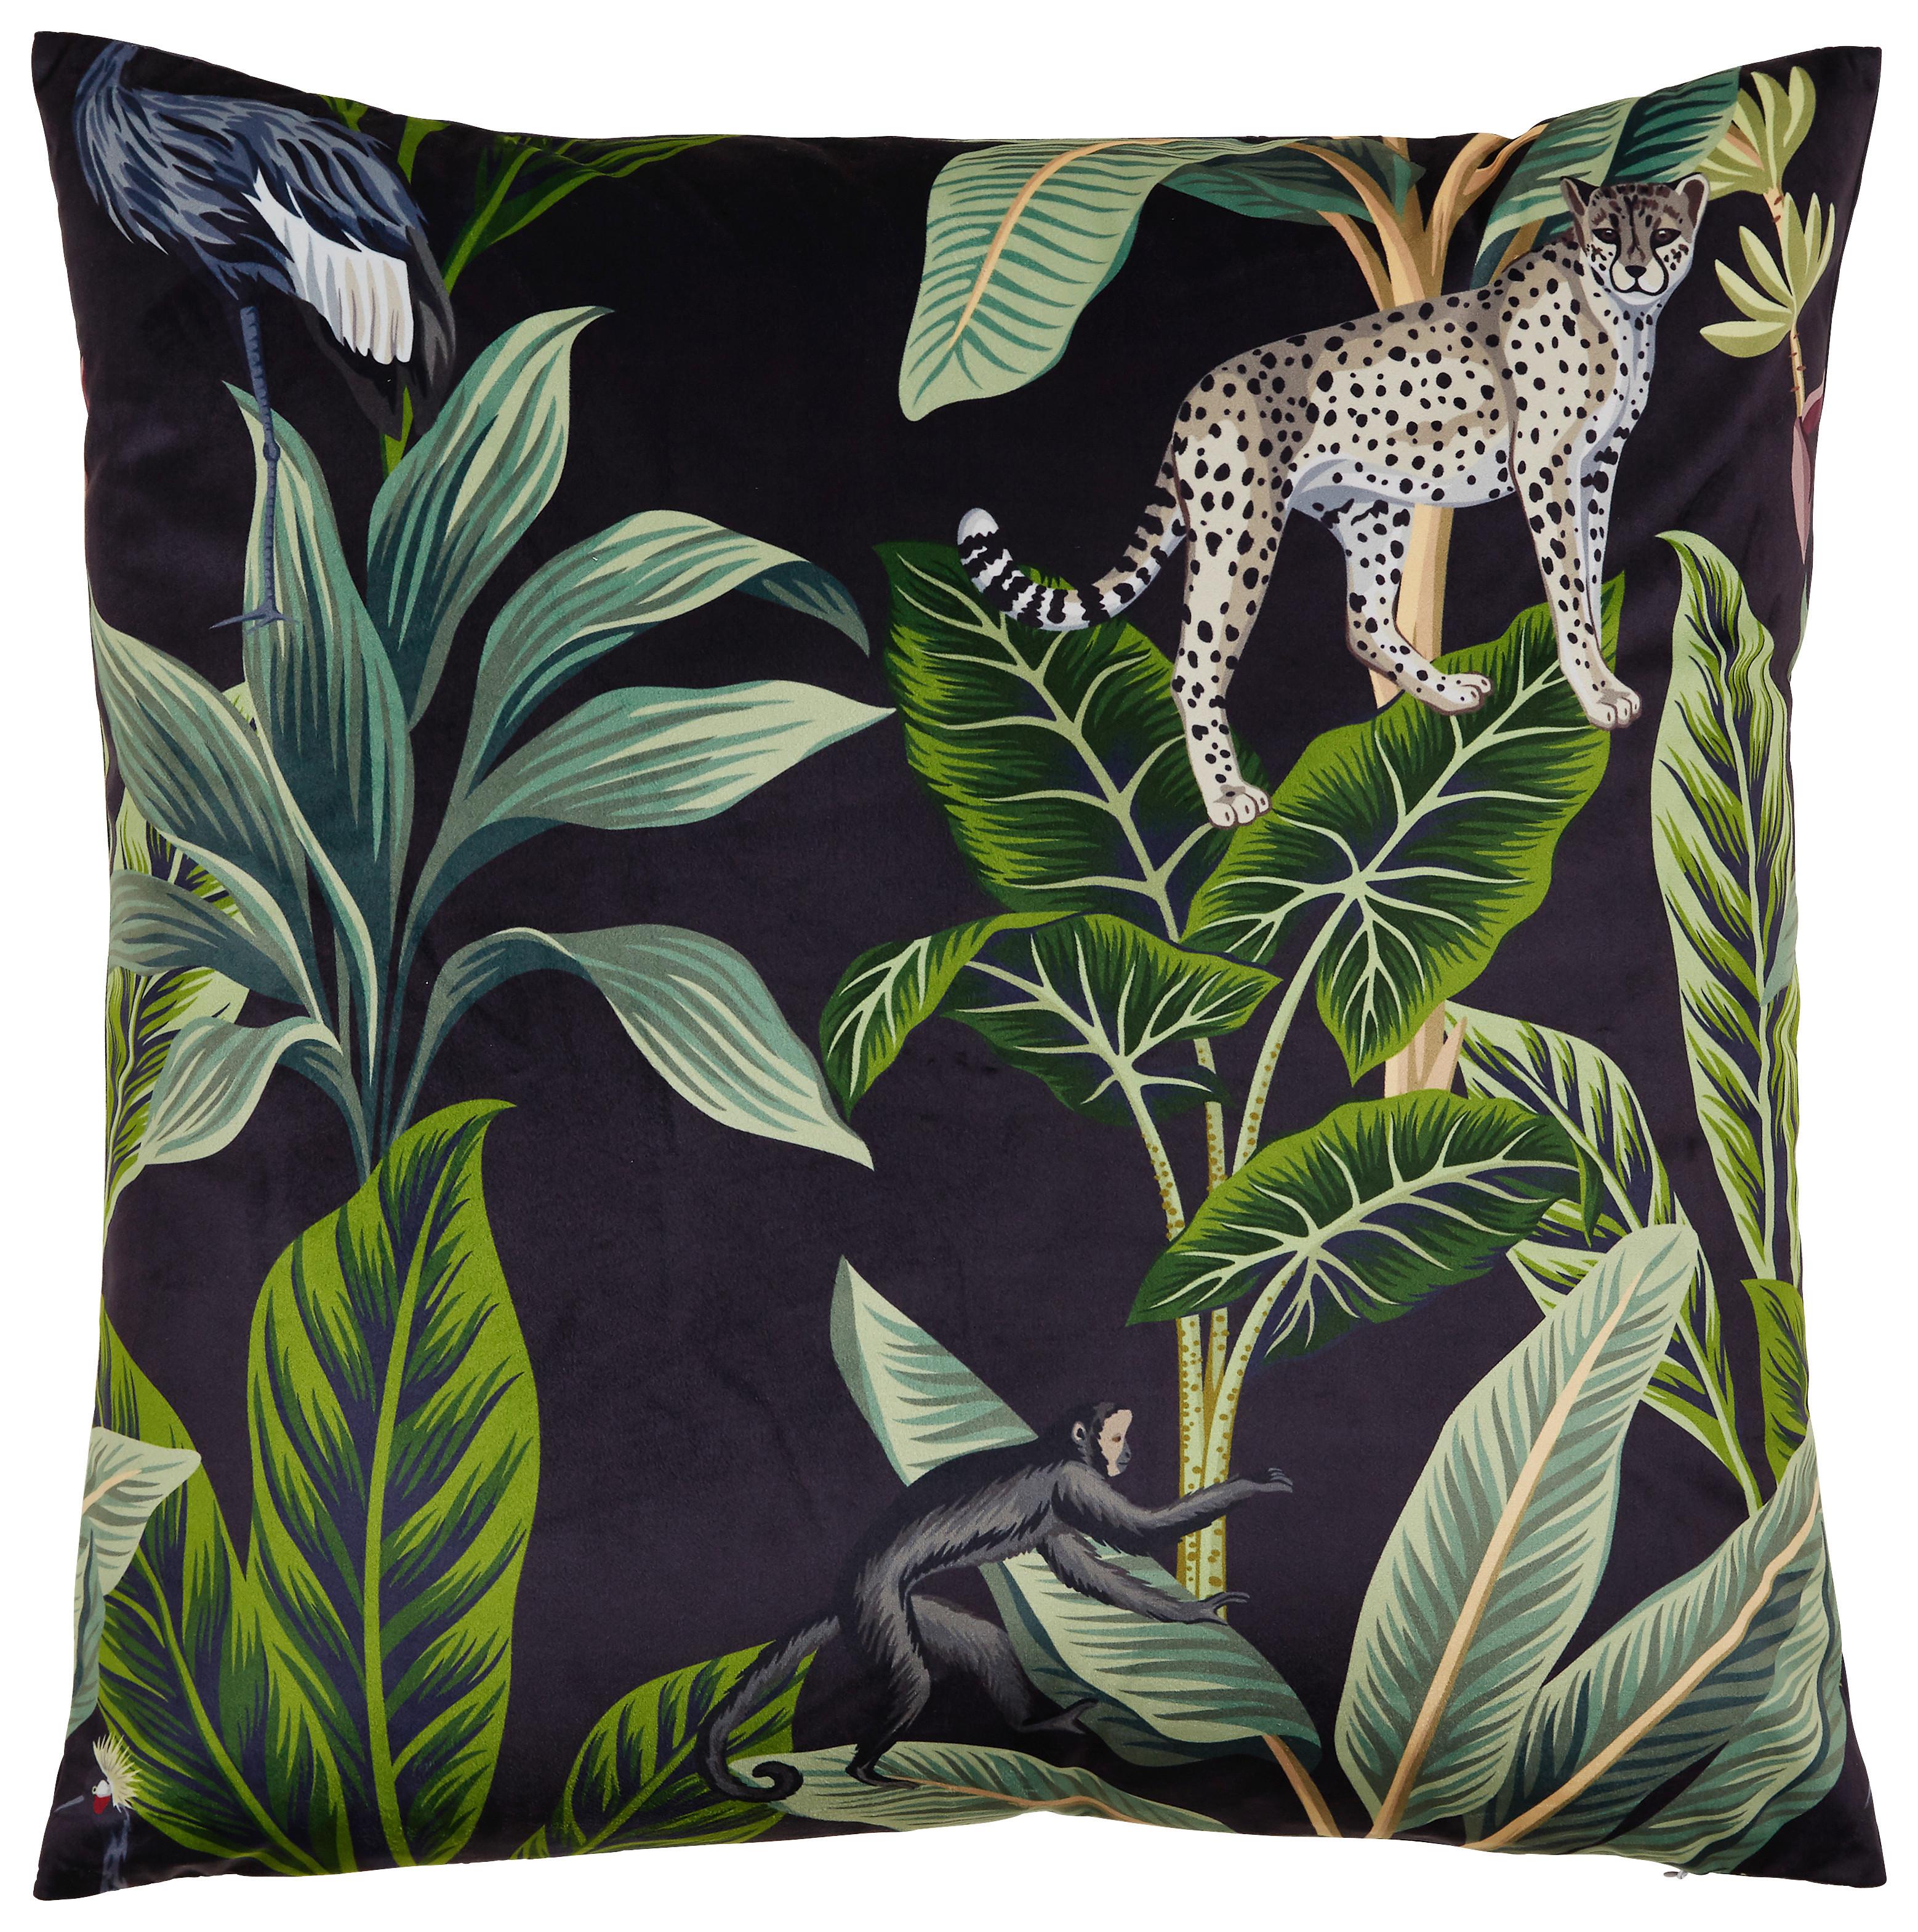 Zierkissen Junglelife in Bunt ca. 60x60cm - Schwarz, Konventionell, Textil (60/60cm) - Modern Living